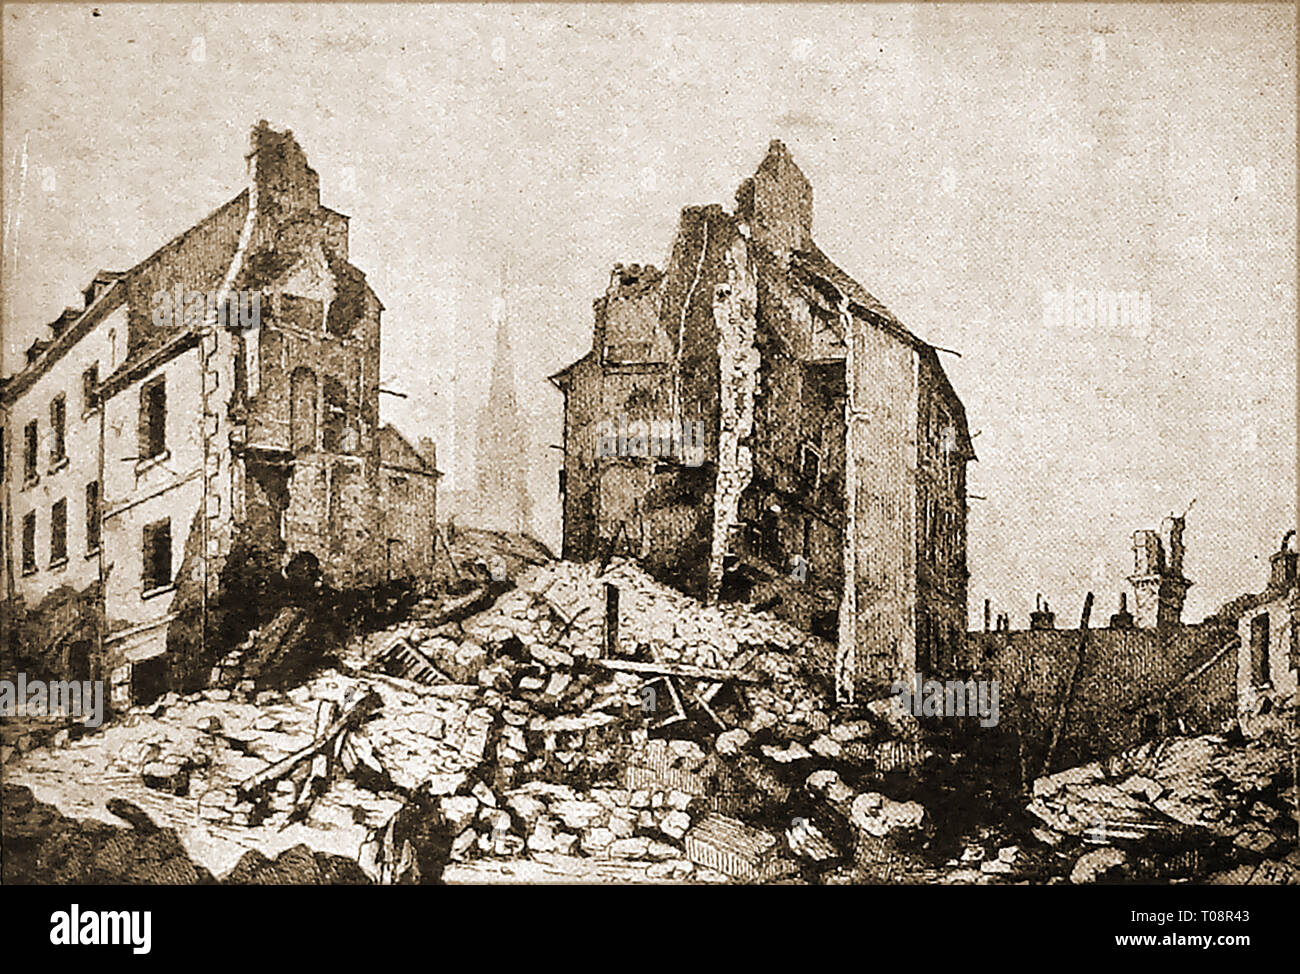 Siege de Paris - ruines à St Cloud - Bataille de Buzenval aka Mont Valrien (1870/1871) au cours de la guerre franco-prussienne Banque D'Images